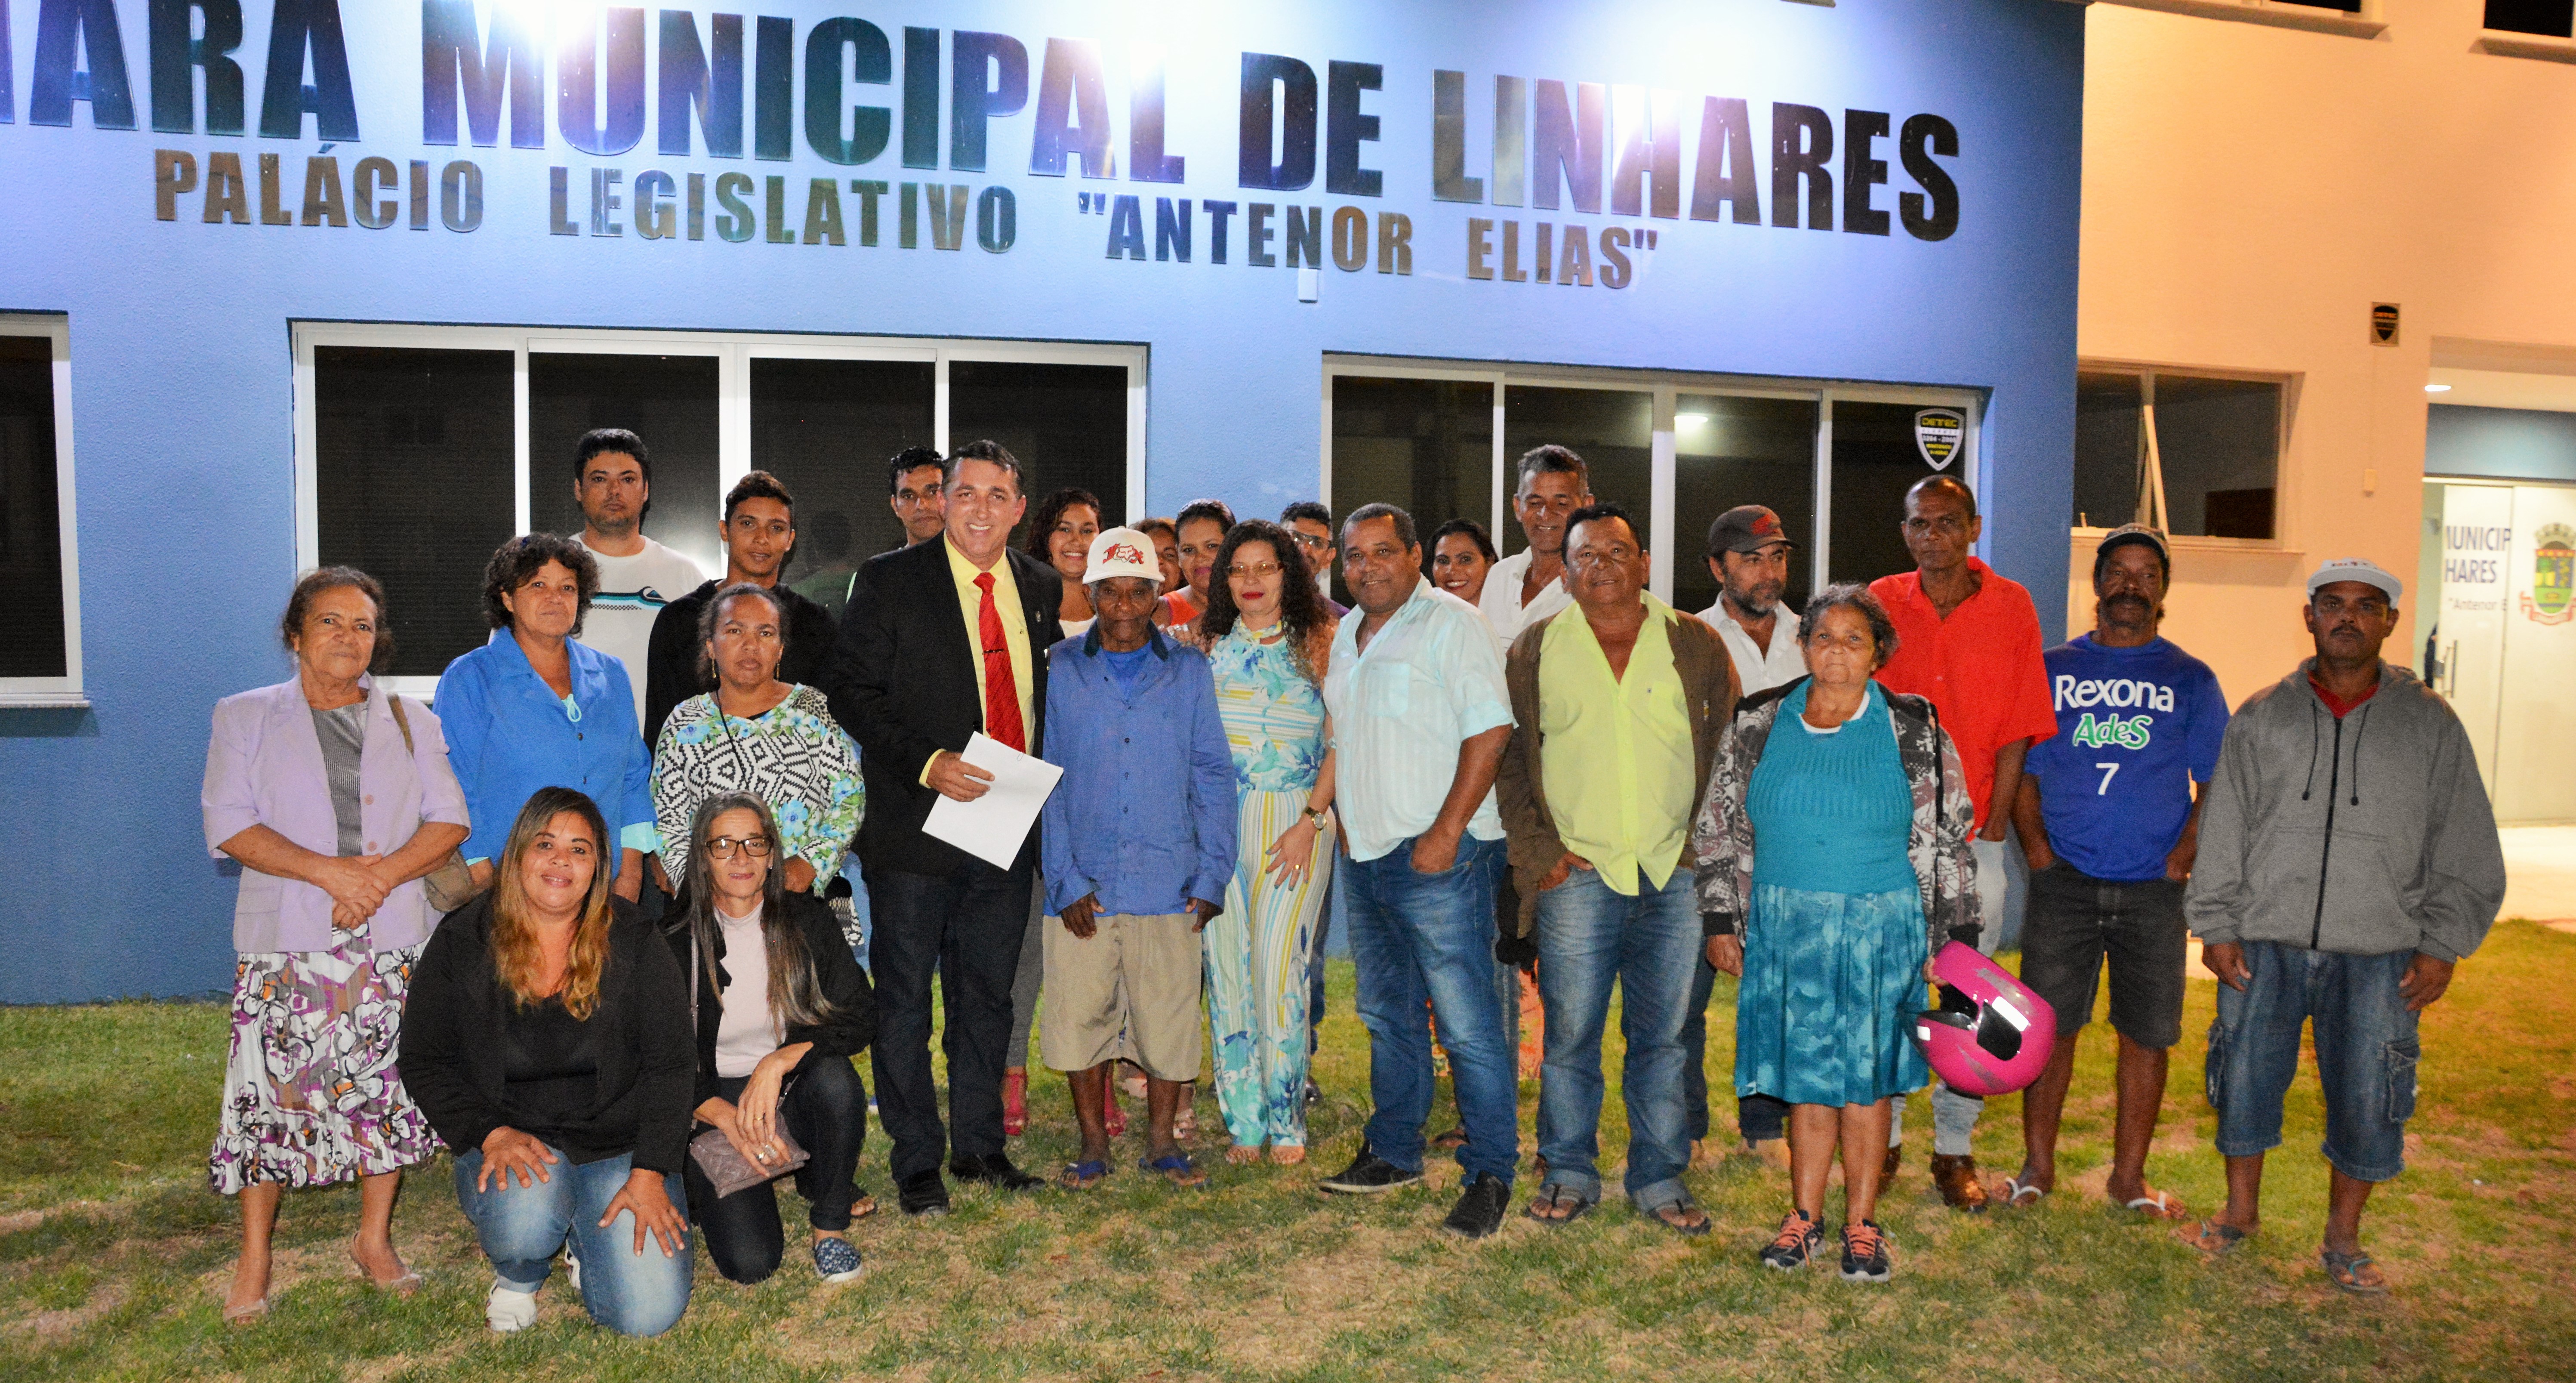 Dia do Pescador é aprovado pelos vereadores de Linhares